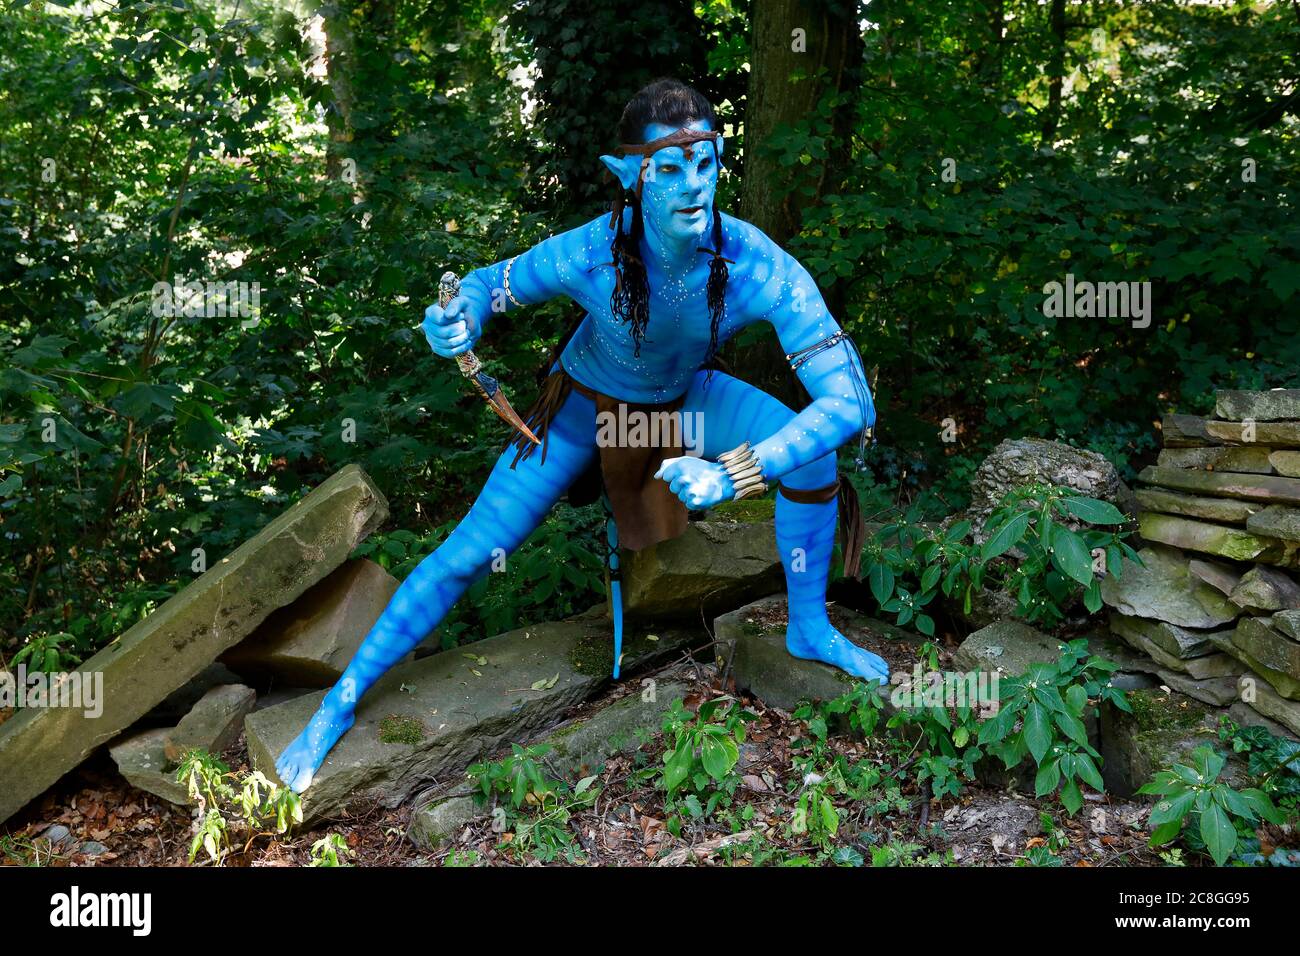 GEEK ART - Bodypainting e trasformazione: Avatar photoshooting Iith Torben Behning come Jake Sully Avatar al giardino Czarnecki a Hameln. - un progetto del fotografo Tschiponnique Skupin e del bodypainter Enrico Lein Foto Stock